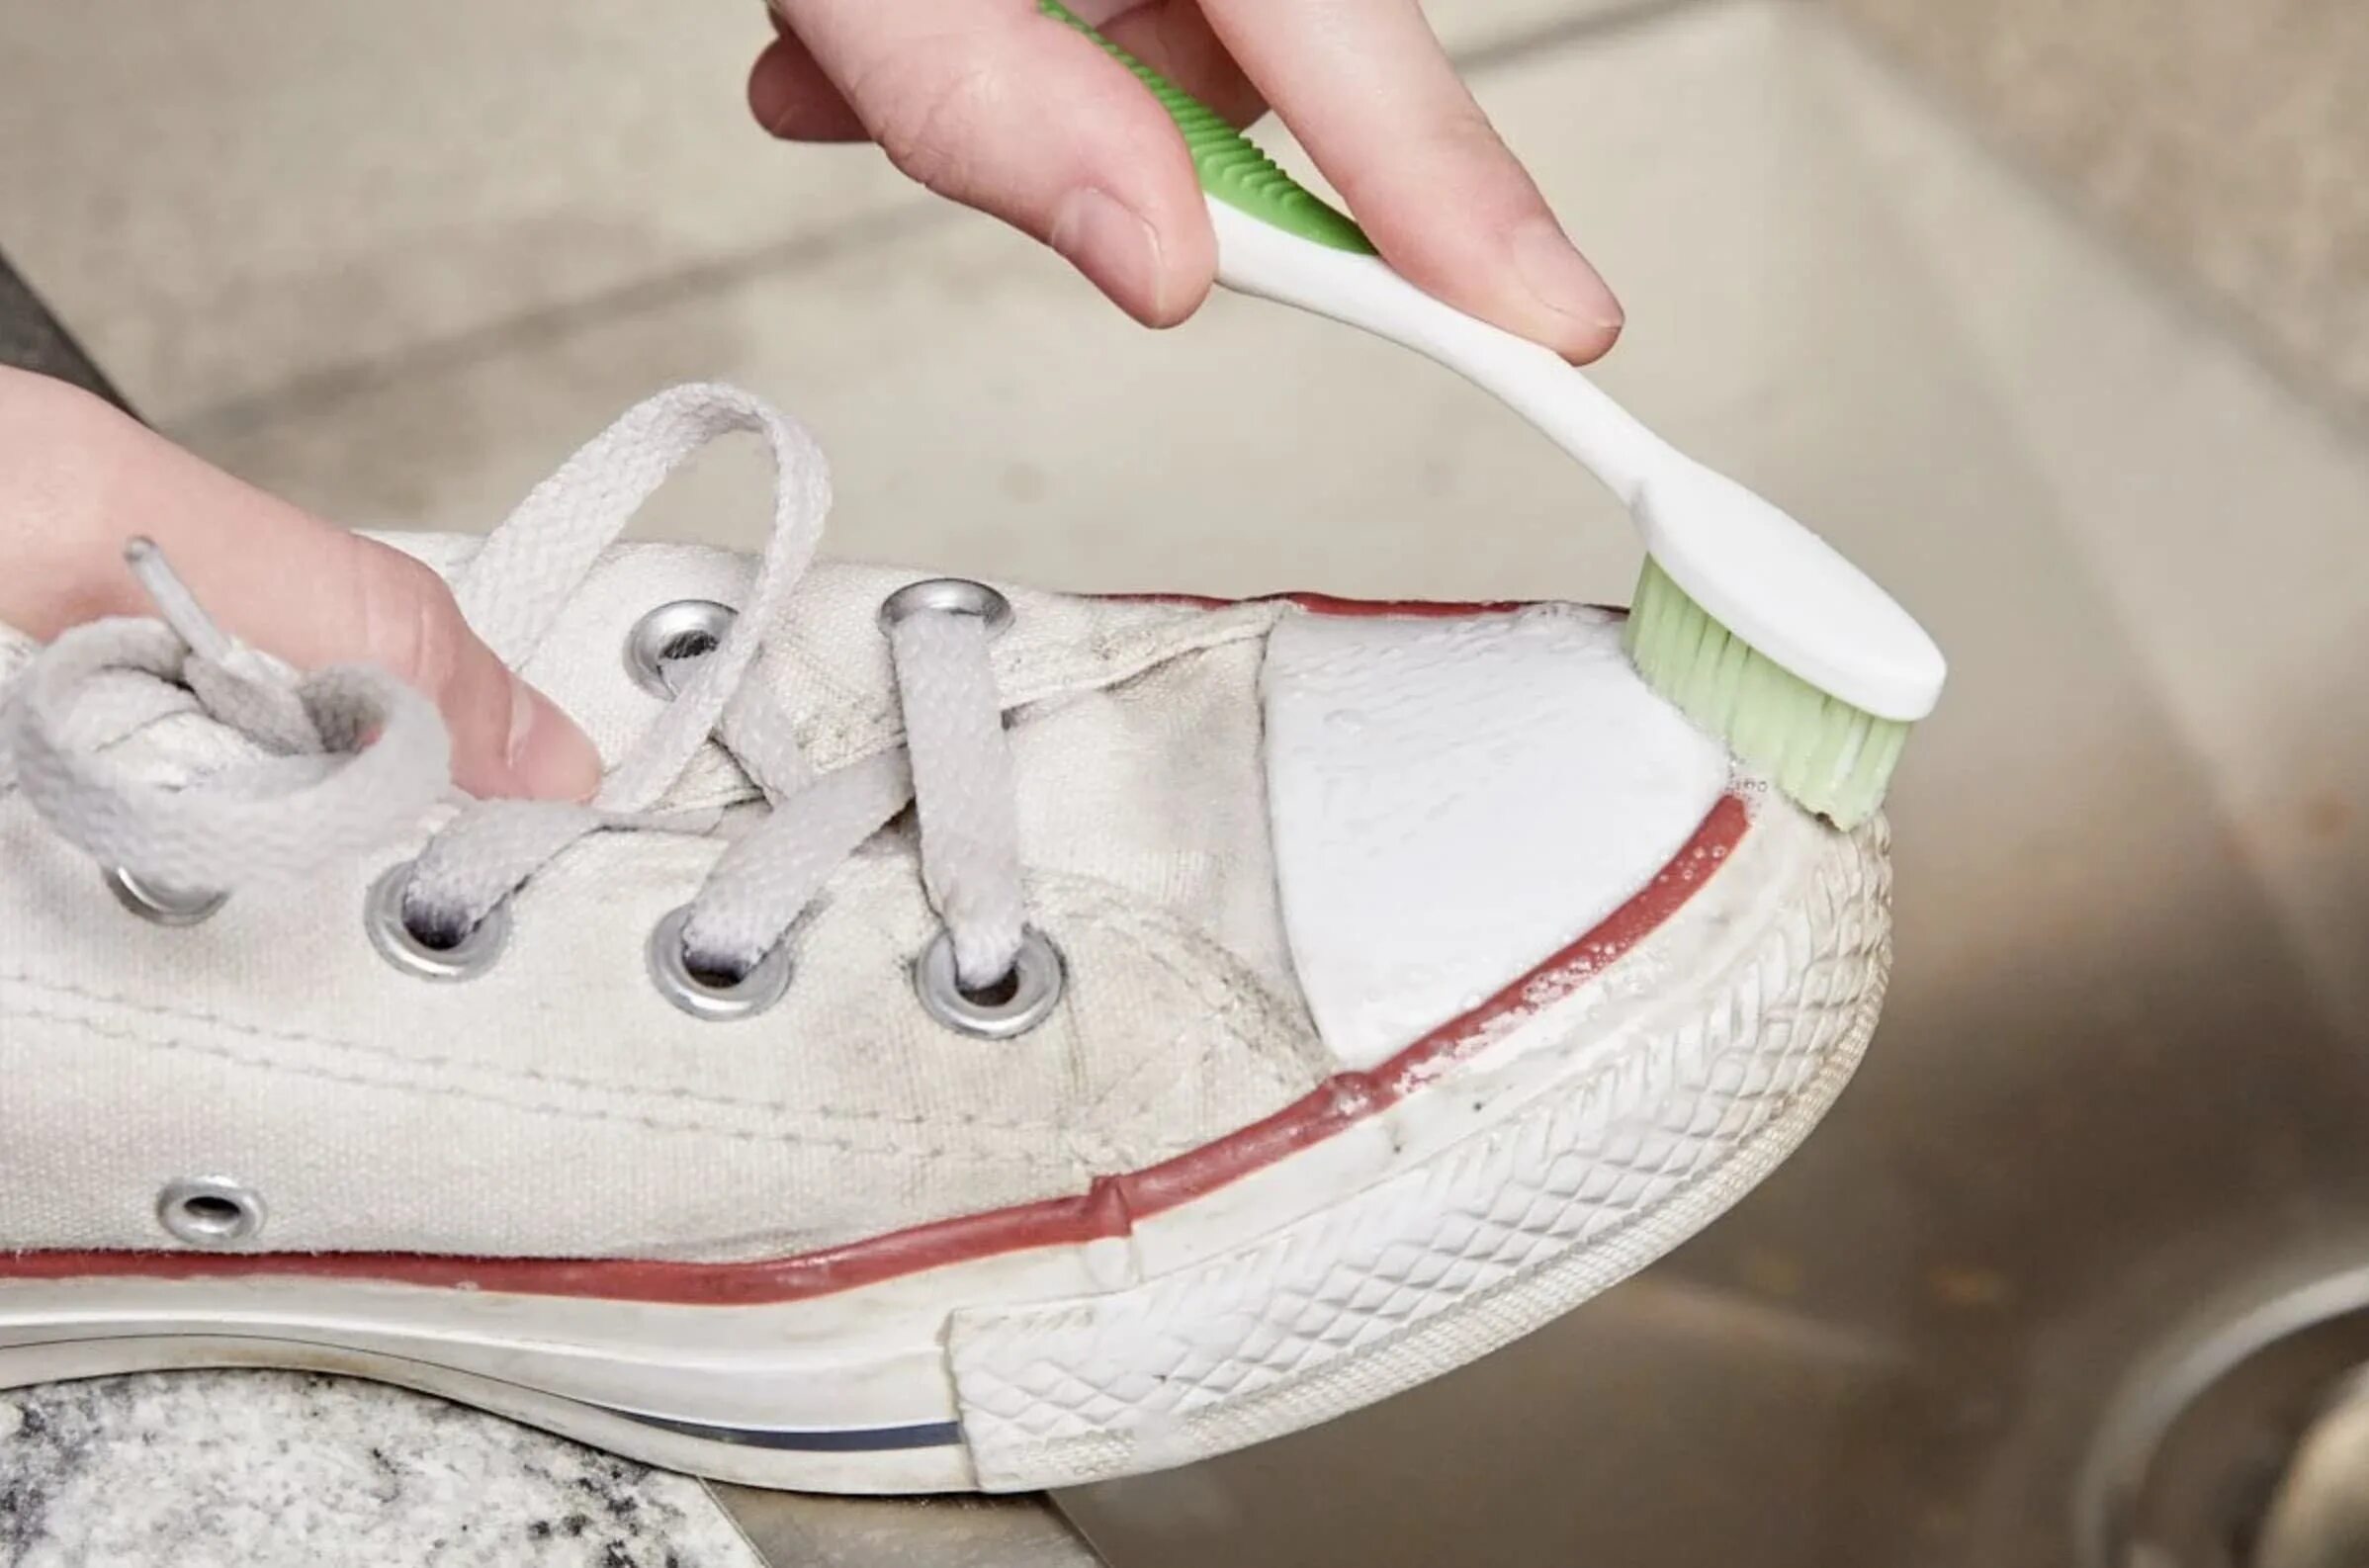 Кеды в клею. Зубная паста для кроссовок. Протирает белую кеды салфеткой. Очистить белую обувь зубной пастой. Можно стирать белое с бежевым